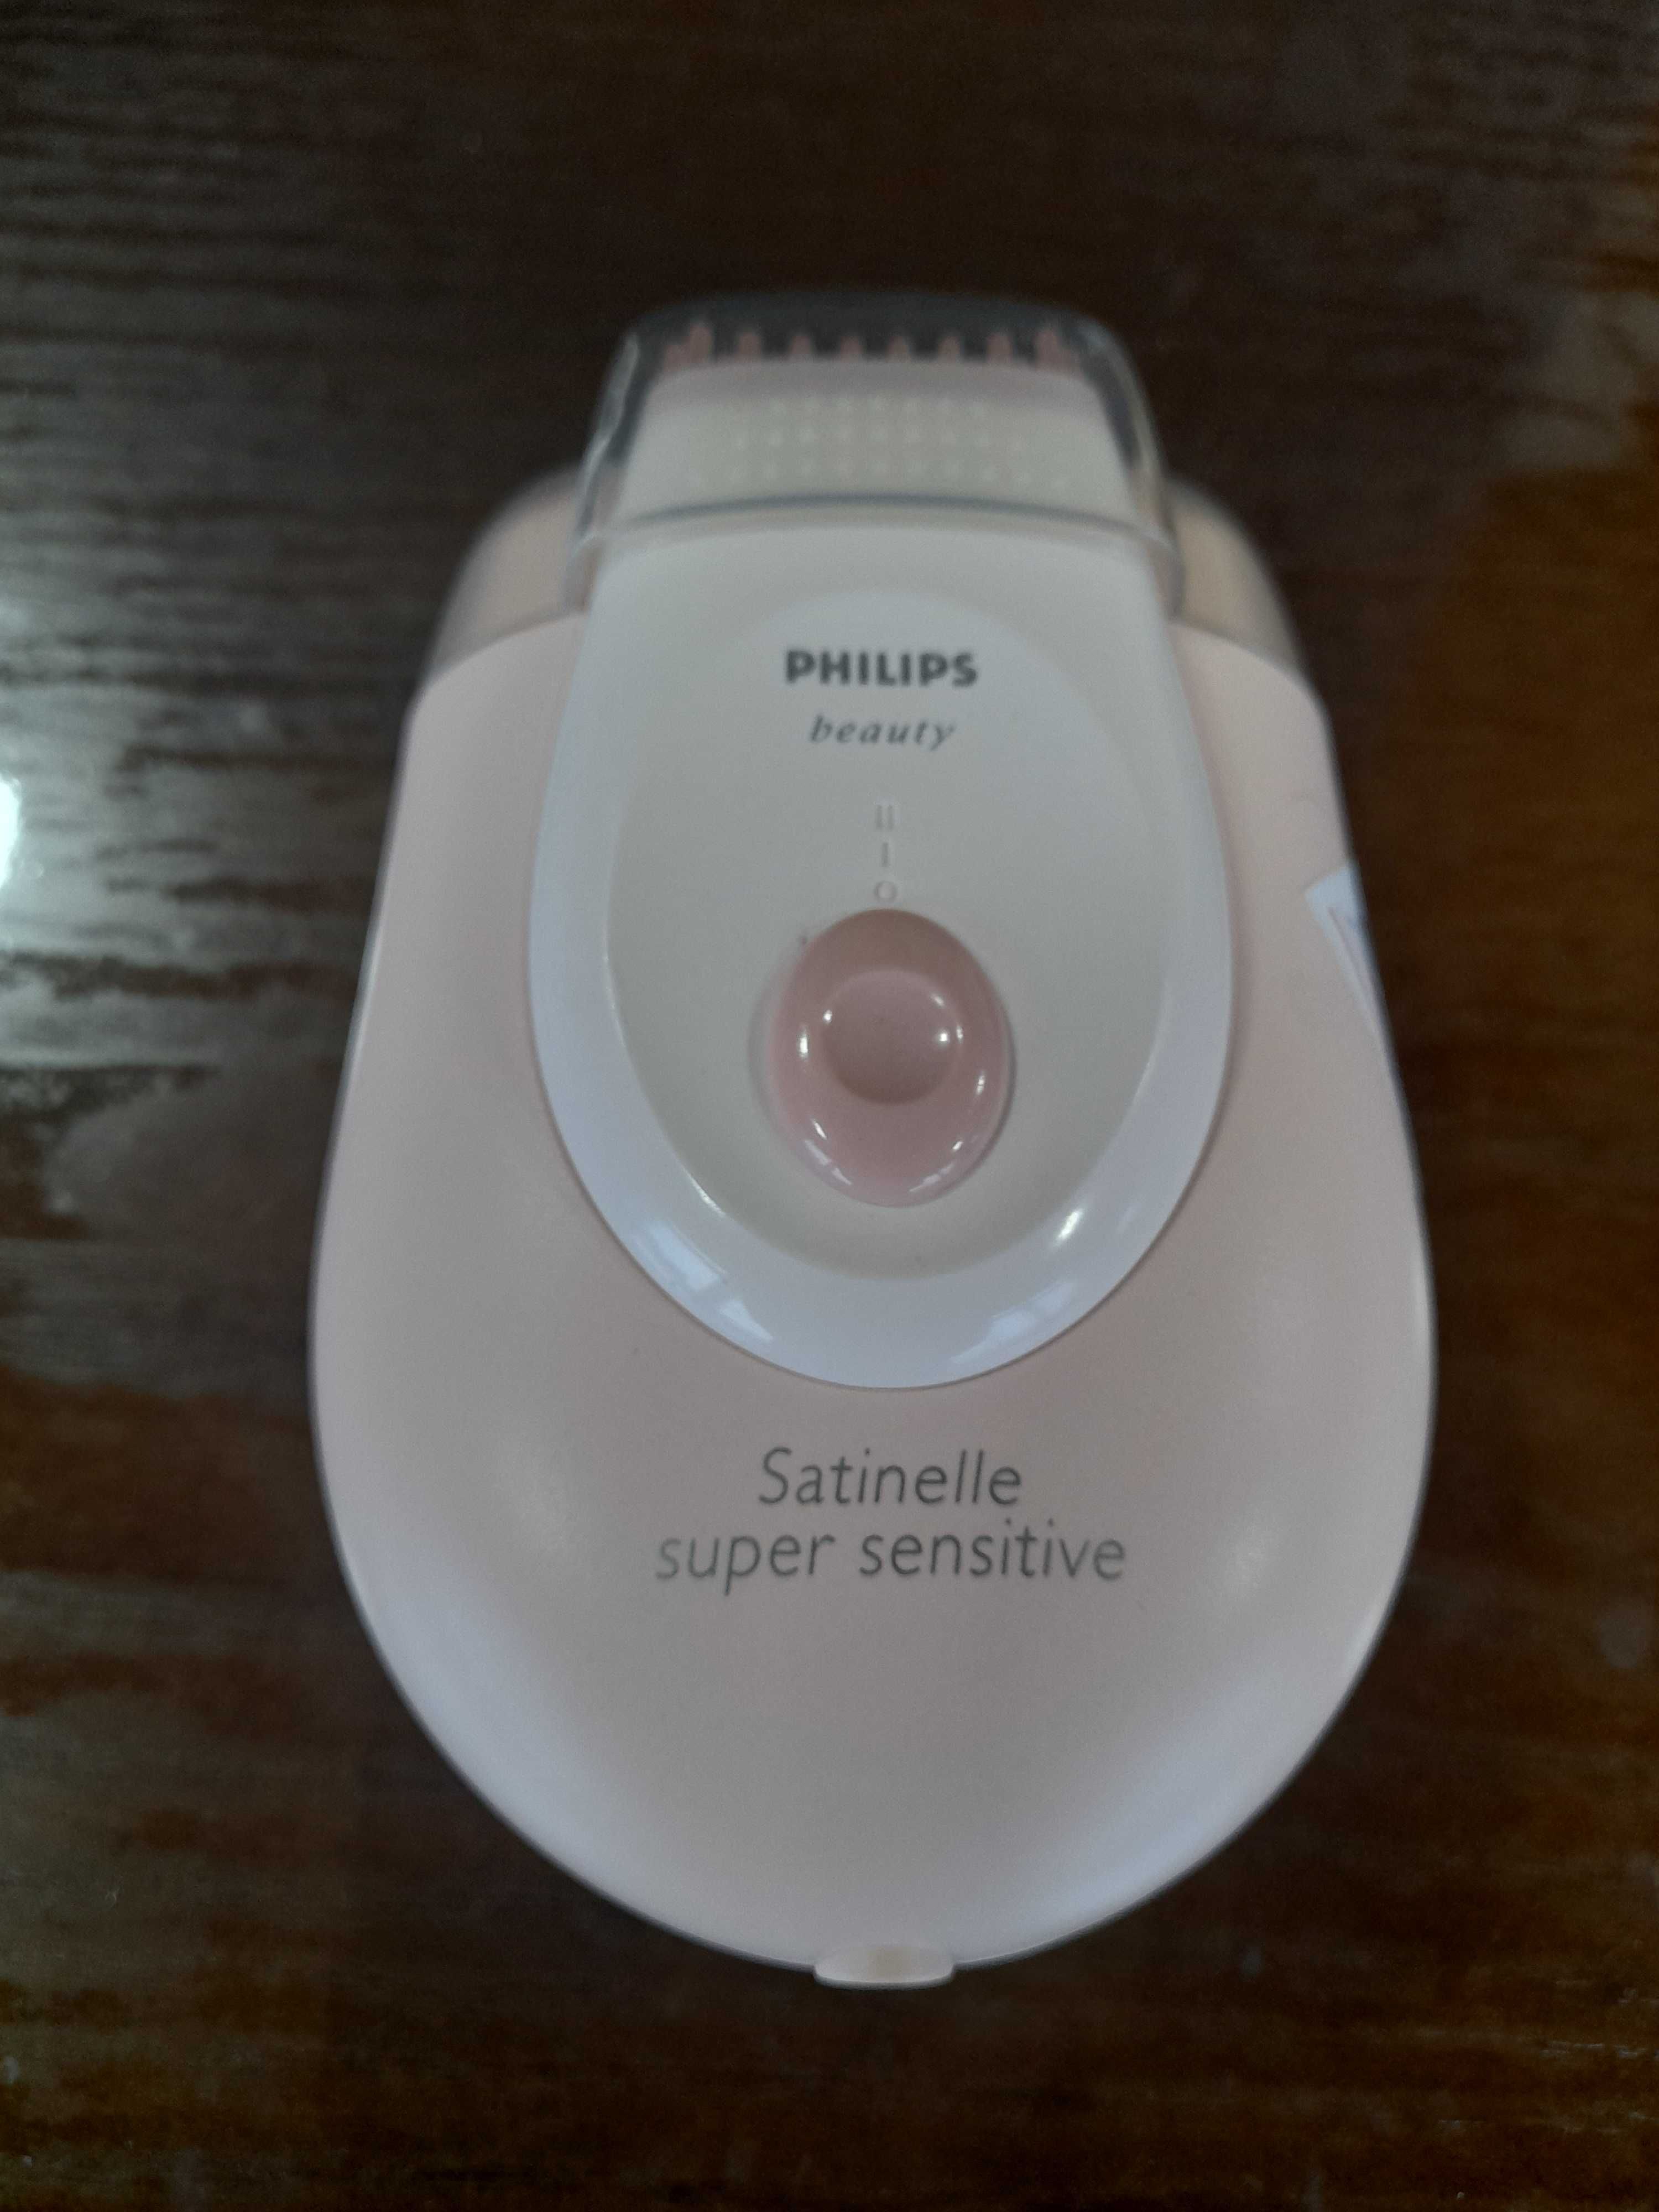 Депилятор Philips,в использовании практически не был,как новый